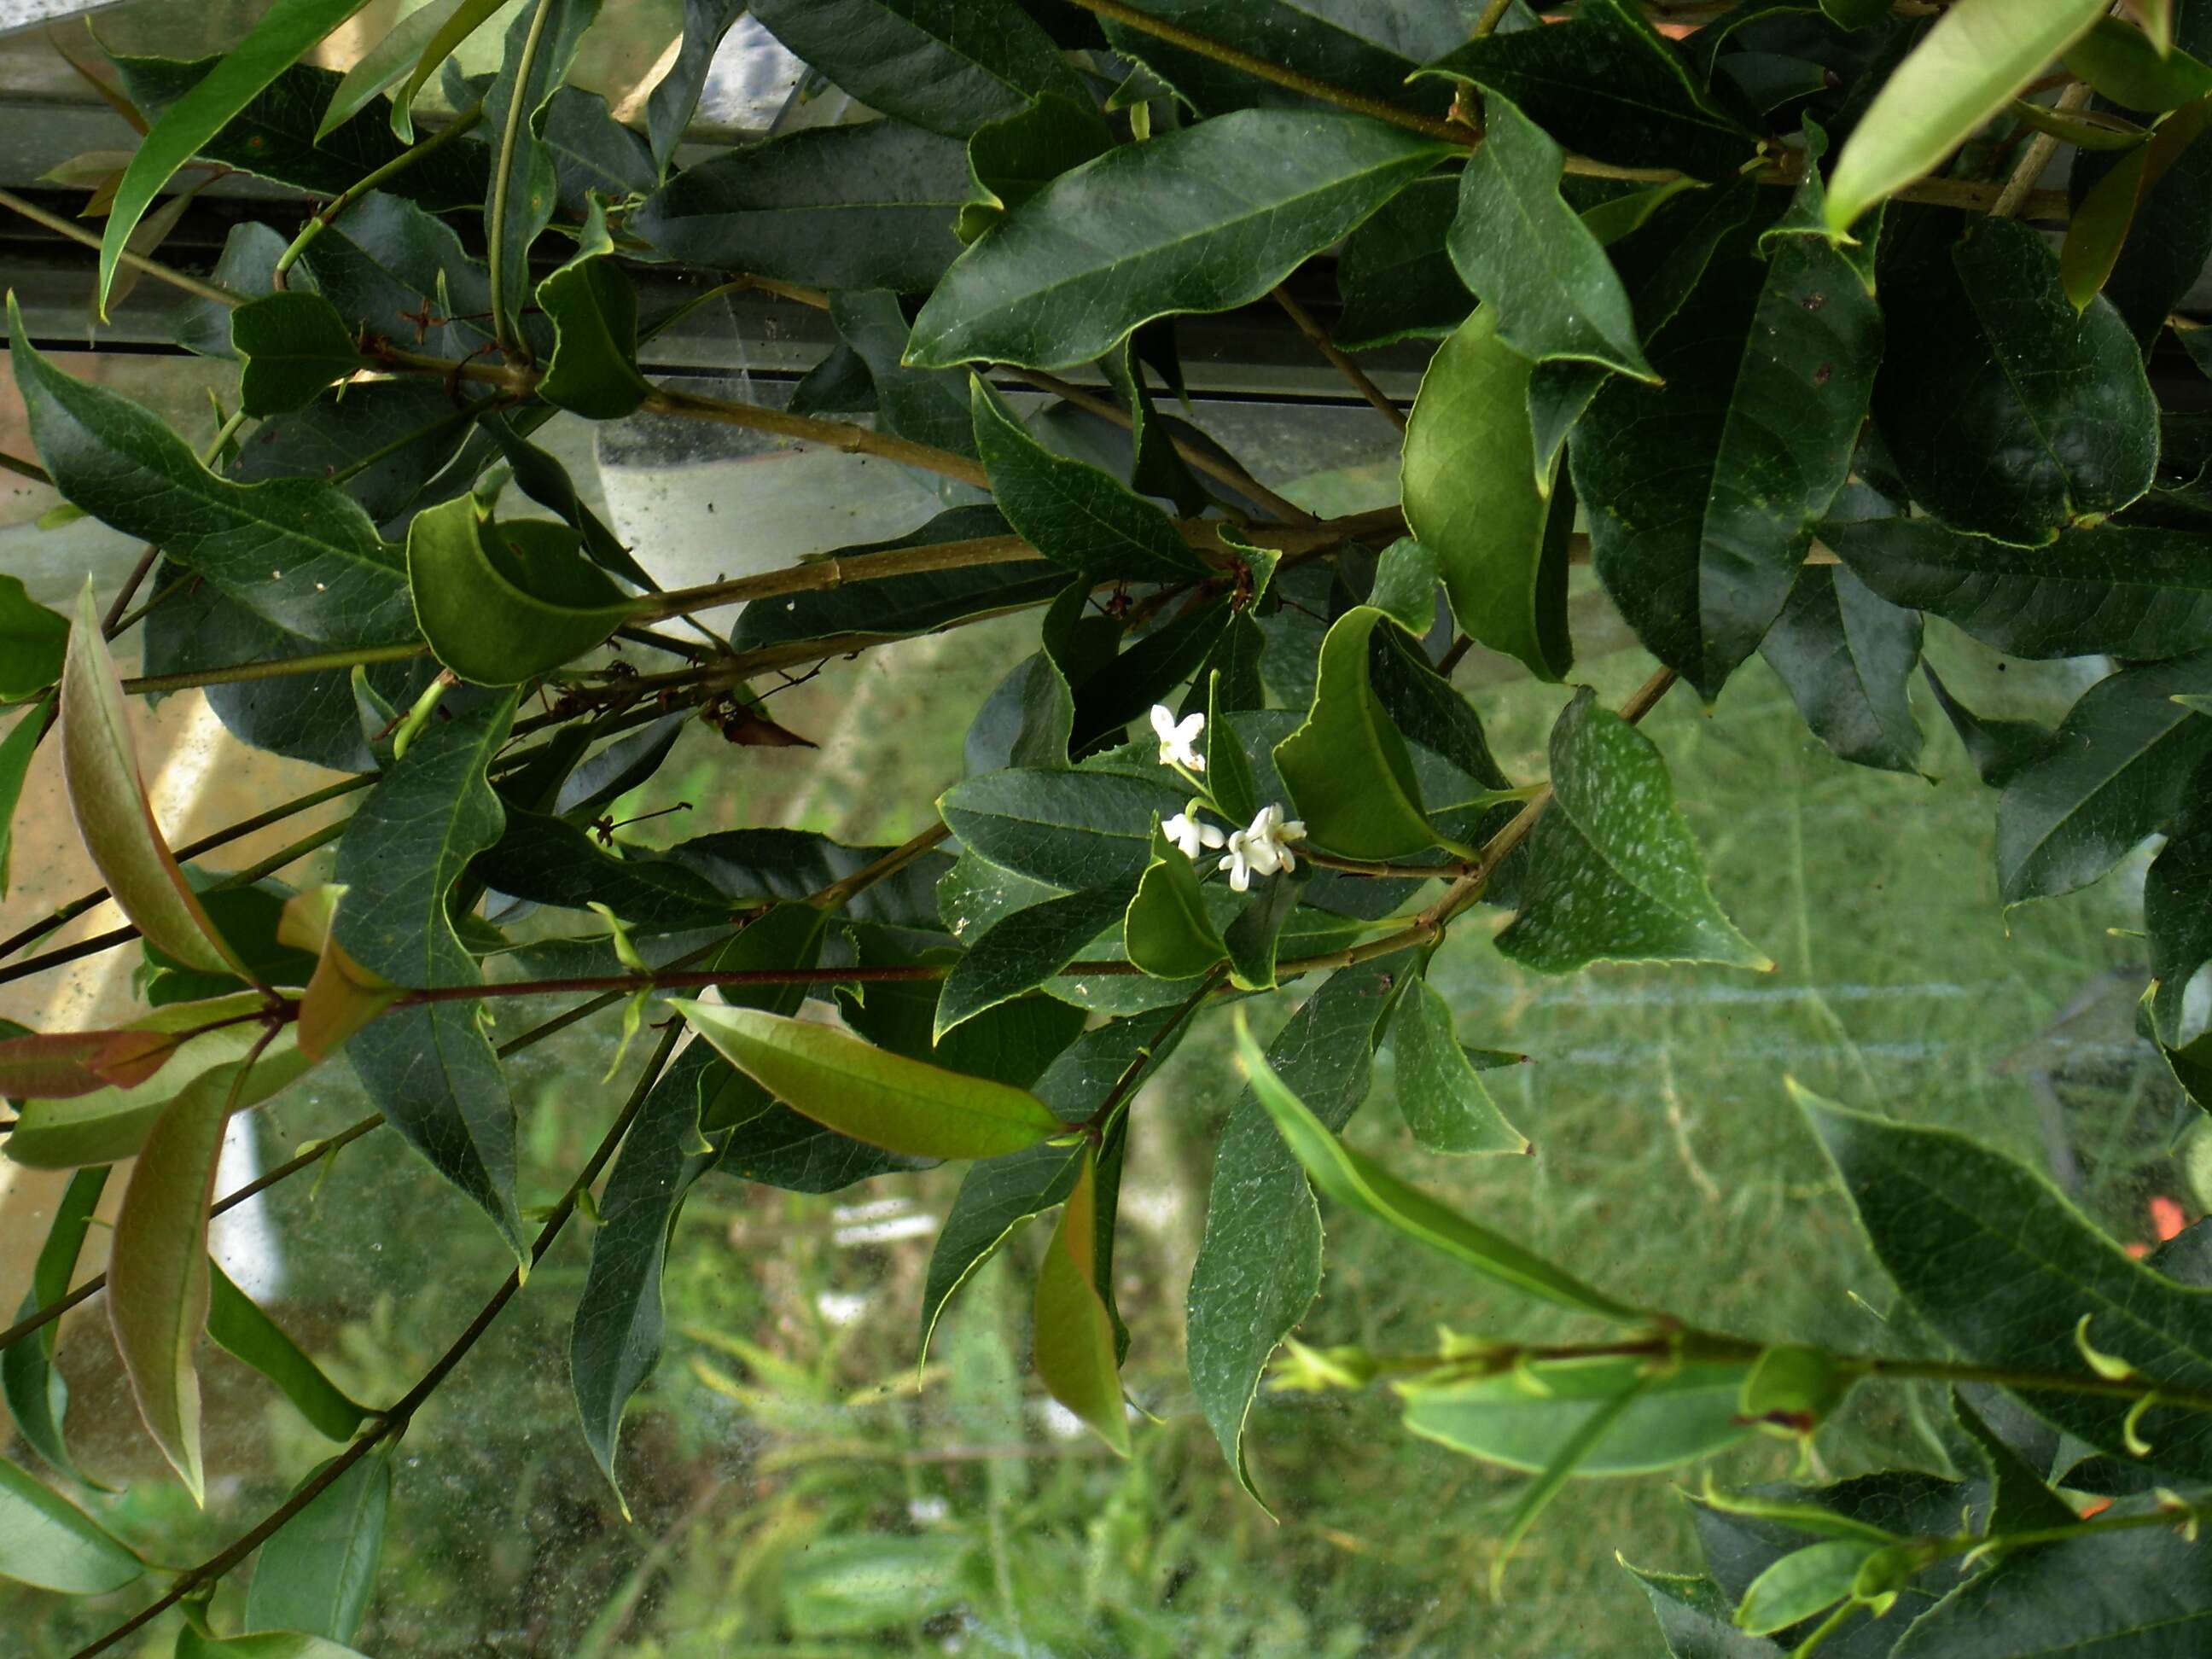 Image of Fragrant Olive